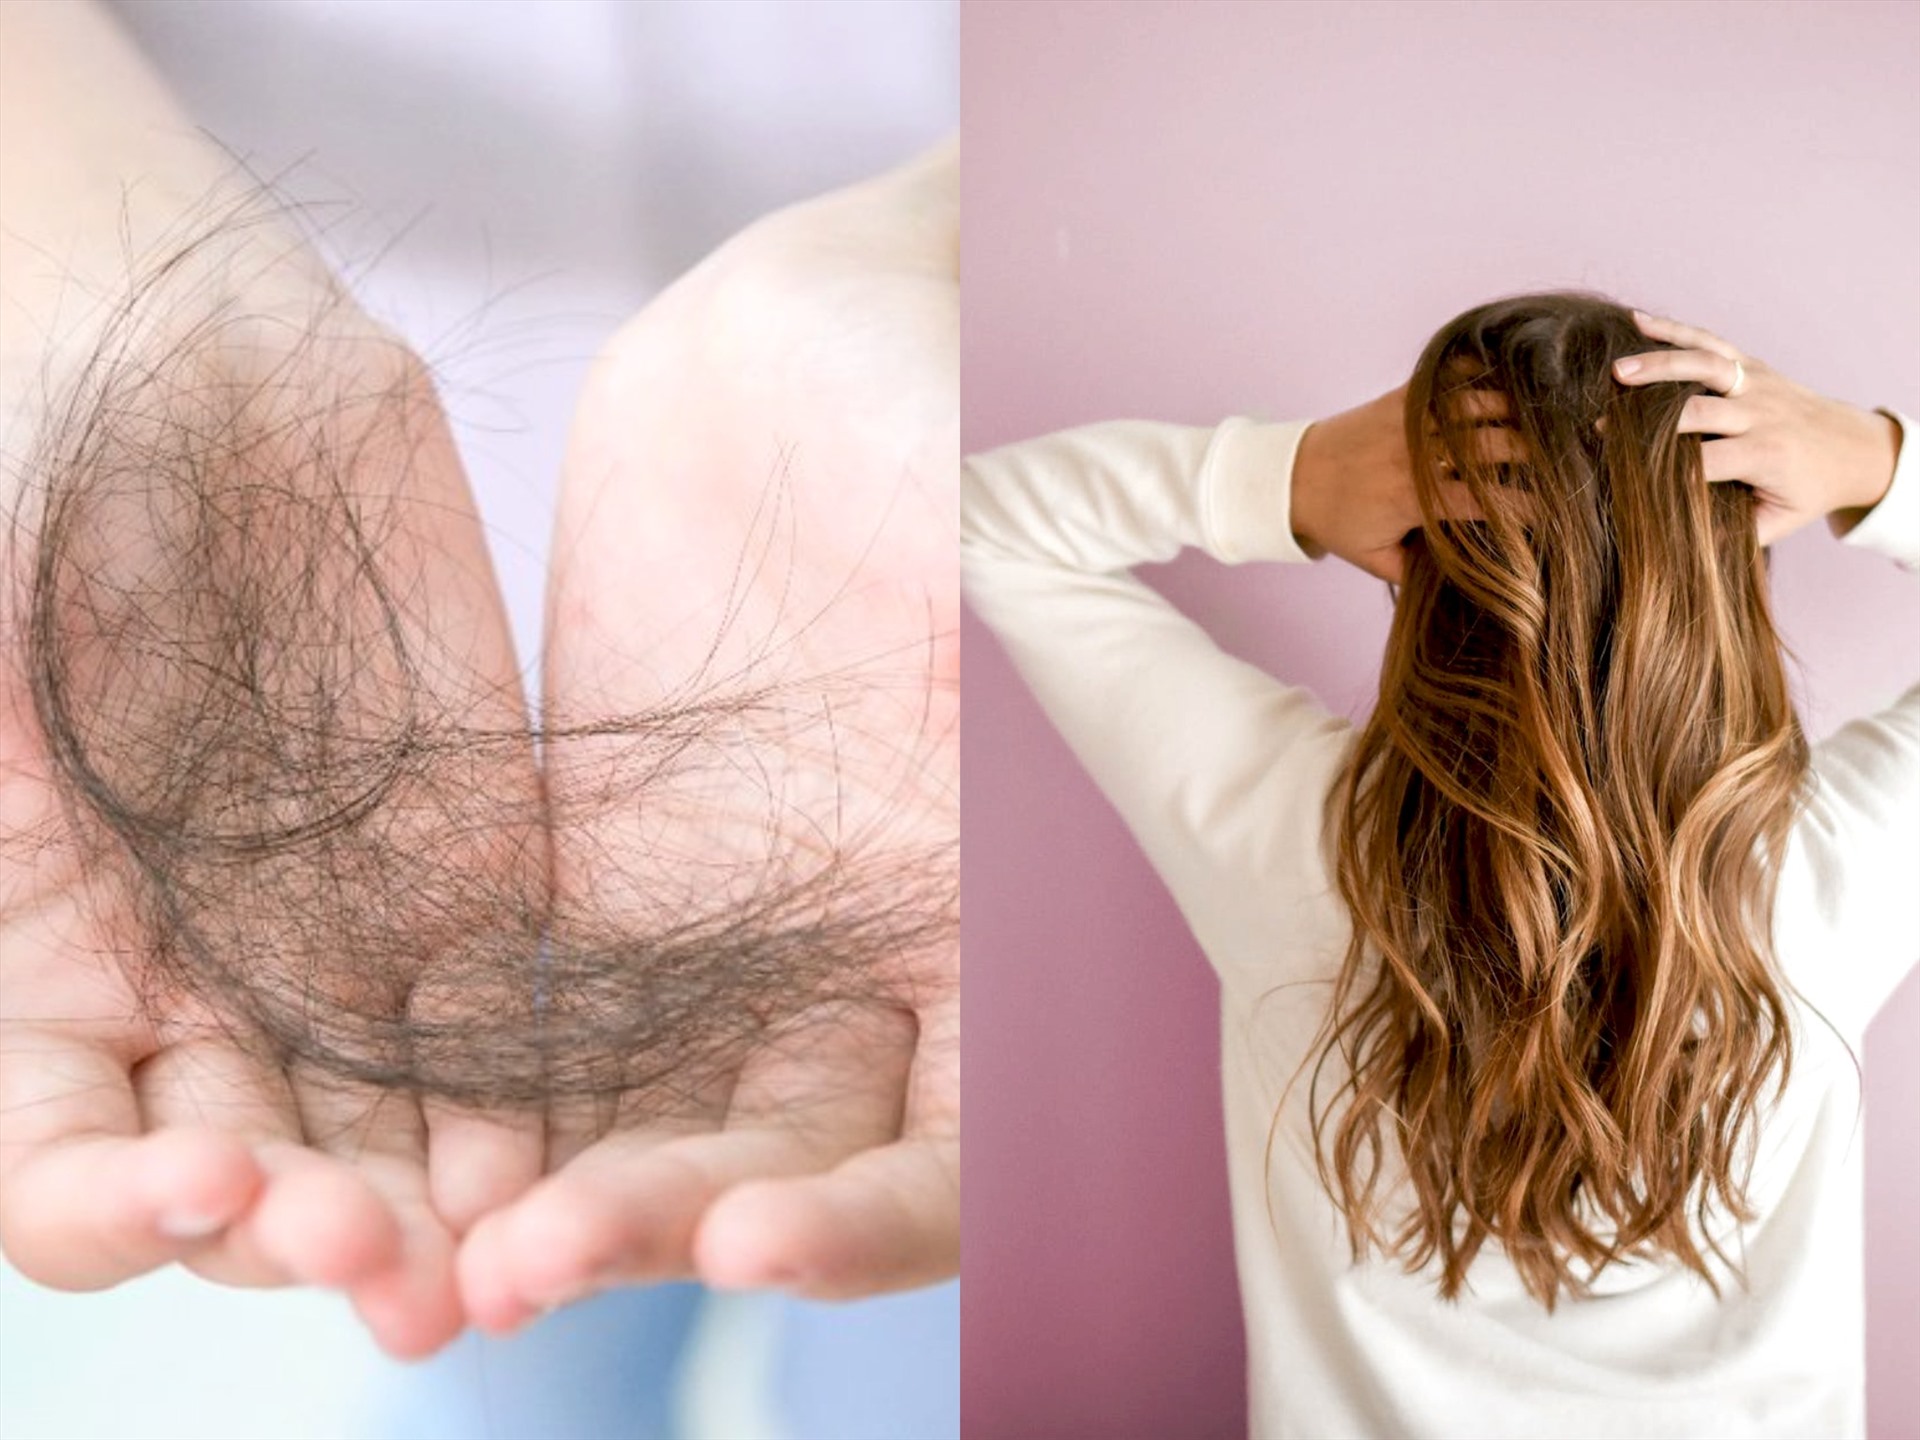 Rụng tóc nhiều là bệnh gì? Cách khắc phục rụng tóc ở nữ và nam